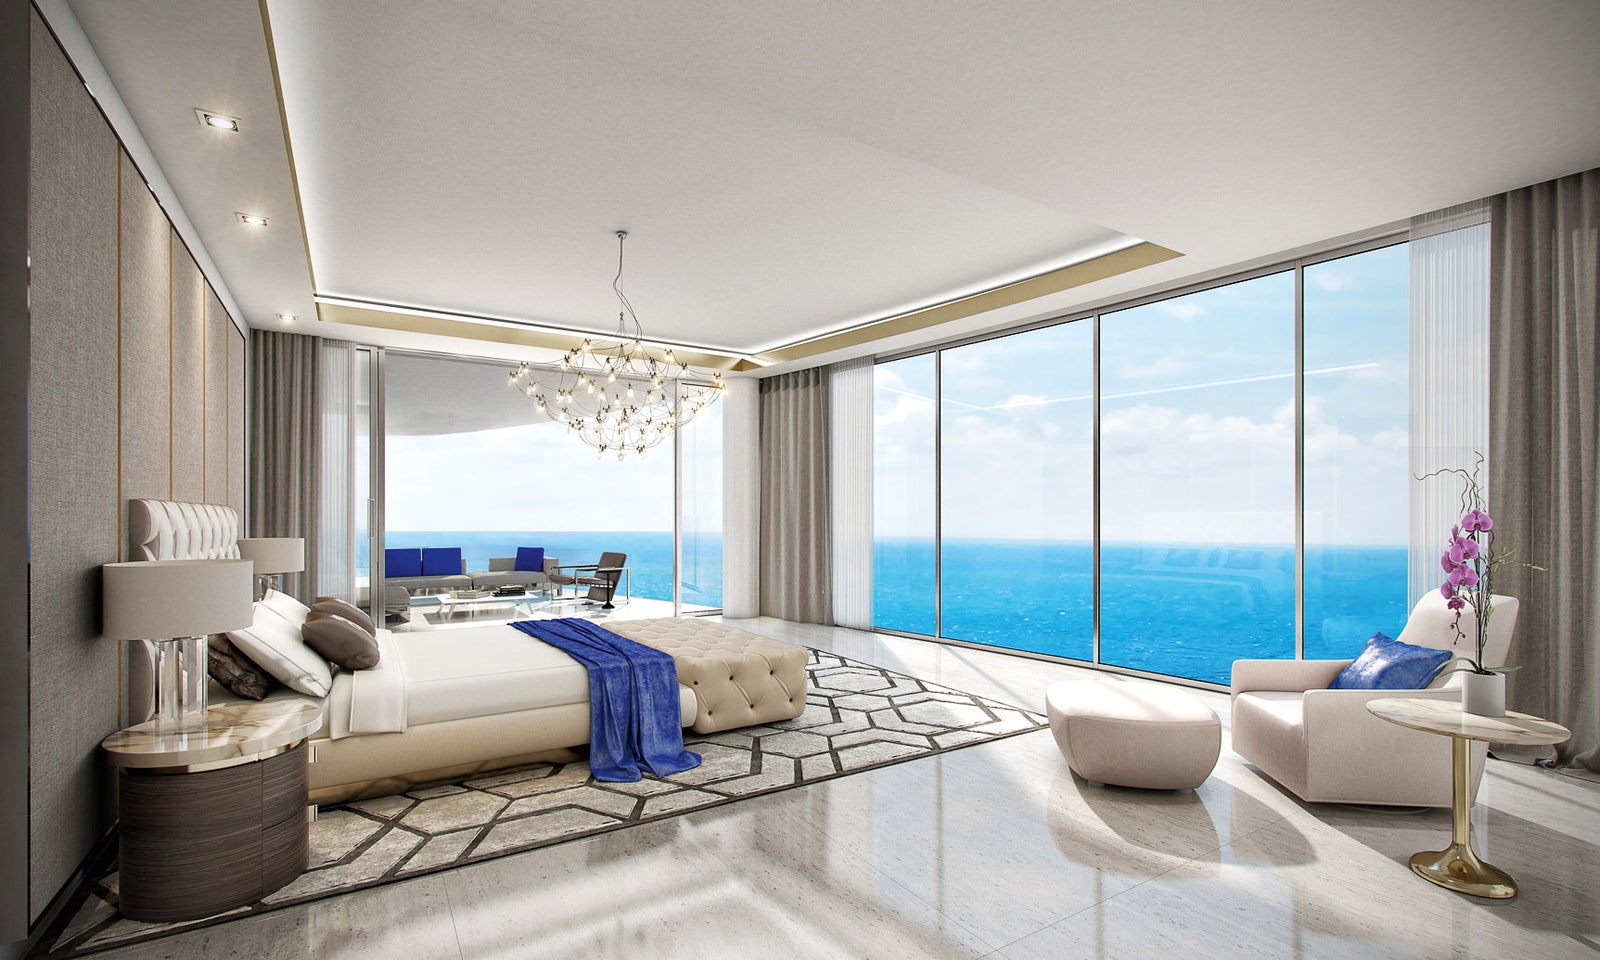 Главная спальня одной из проектируемых квартир. Из панорамных окон виден океан.